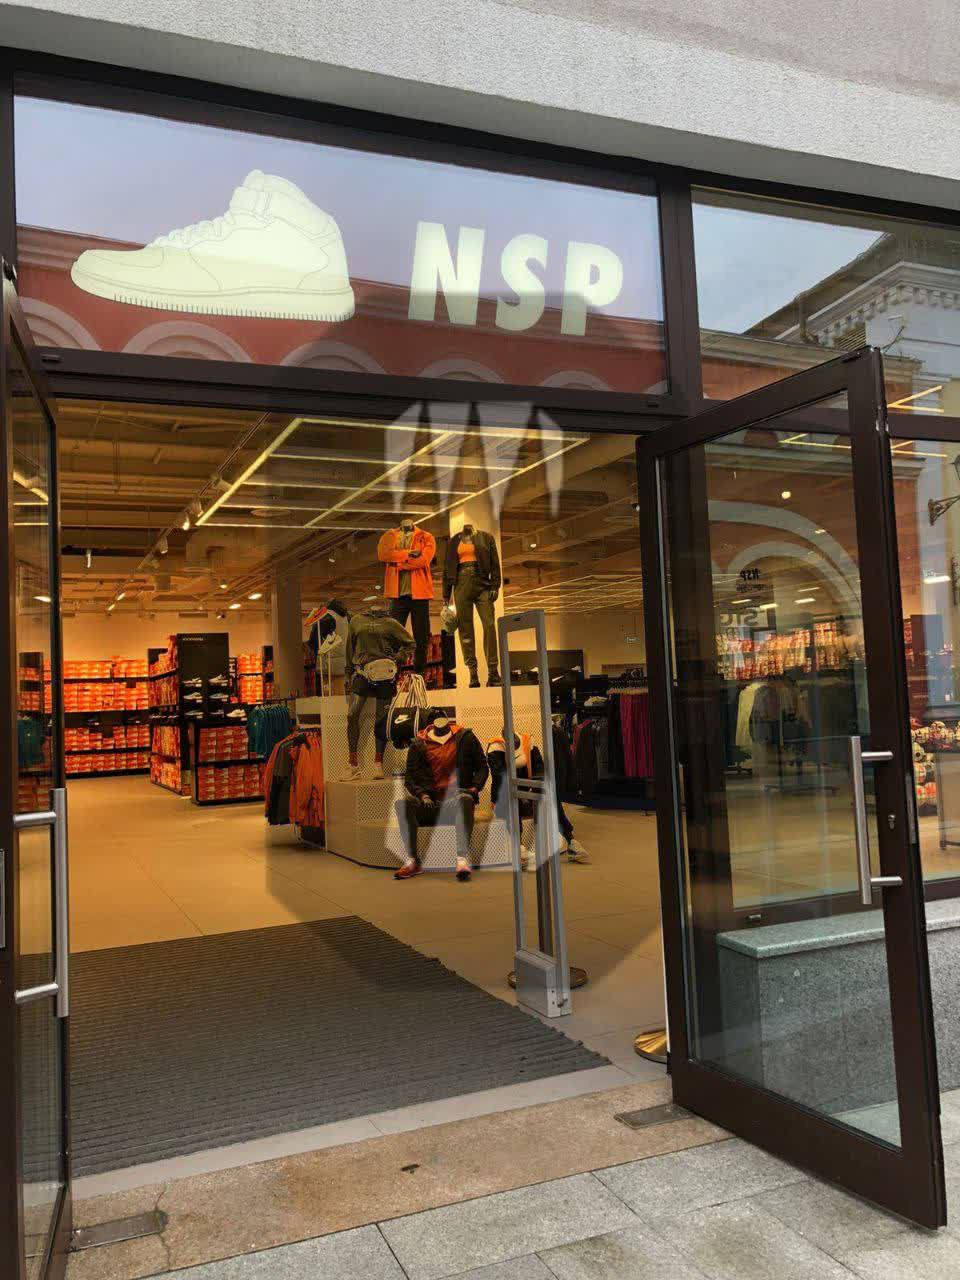 В Москве открылся магазин Nike под новым названием NSP: когда Найк вернется в Россию, где купить товары Найк в России 4 2022 ноября 2022 - msk1.ru